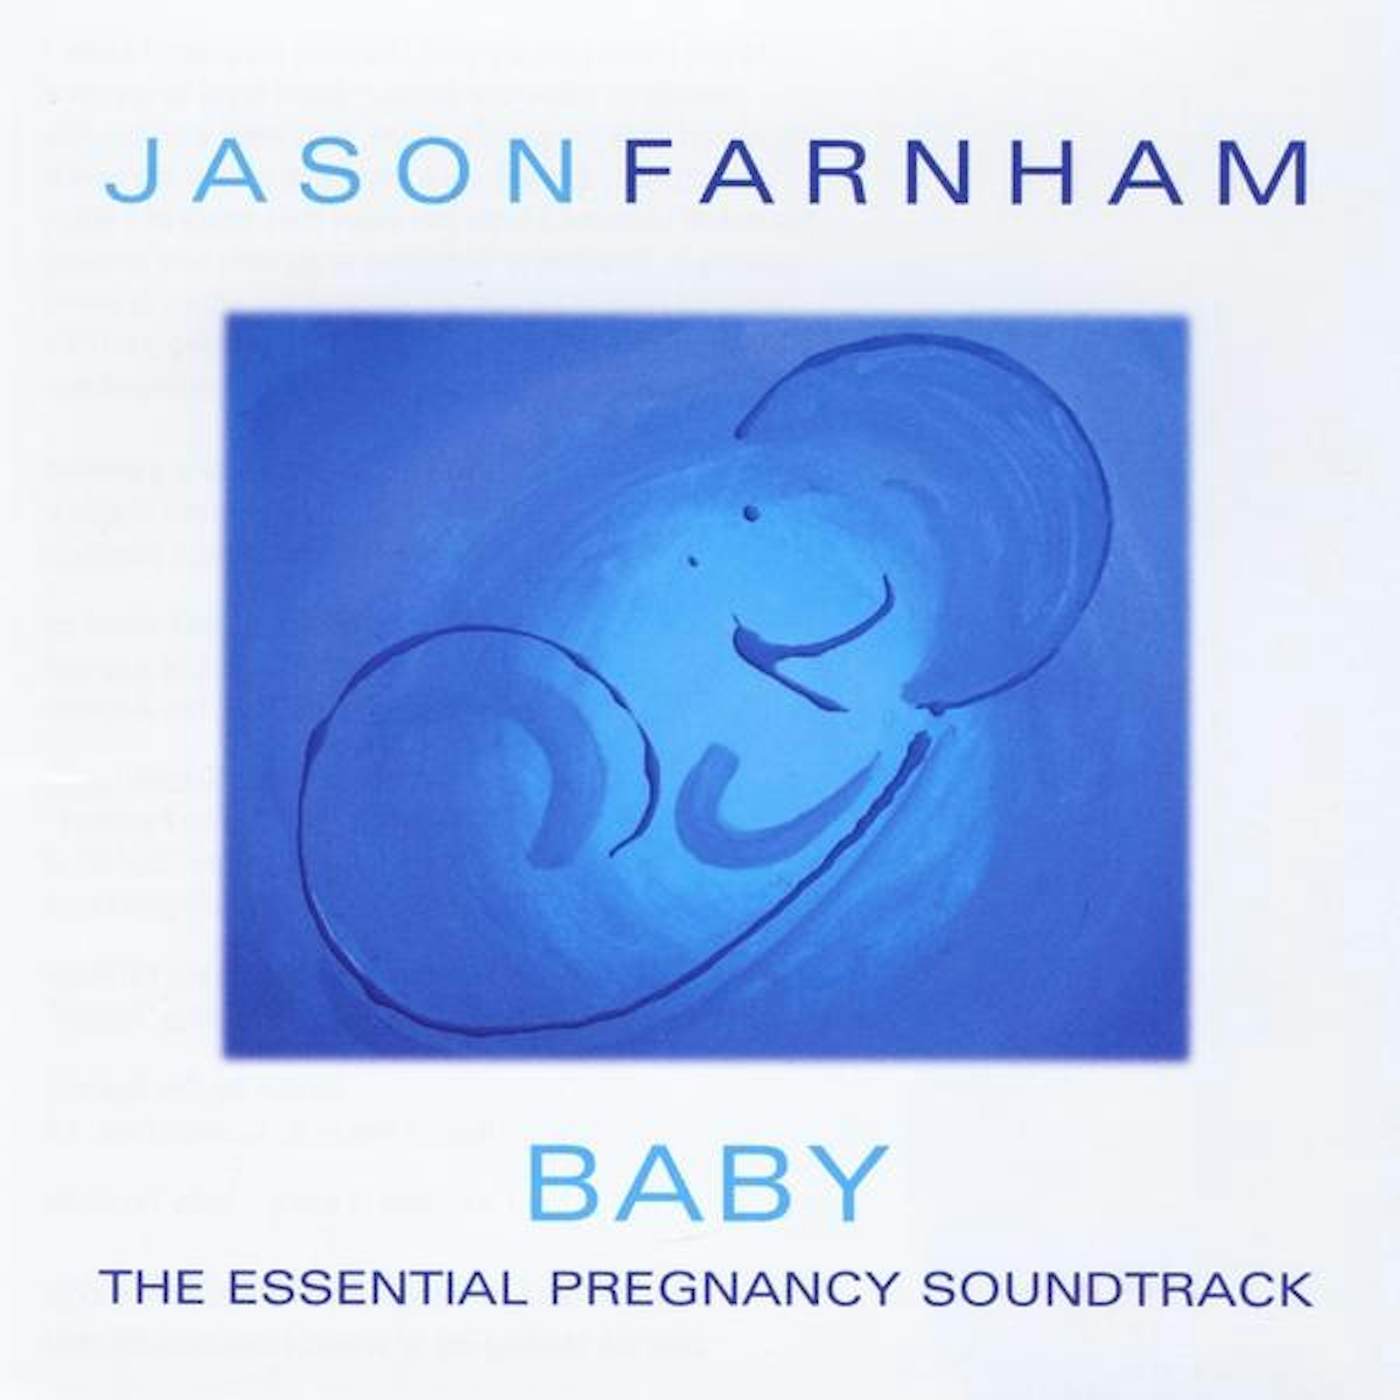 Jason Farnham BABY CD